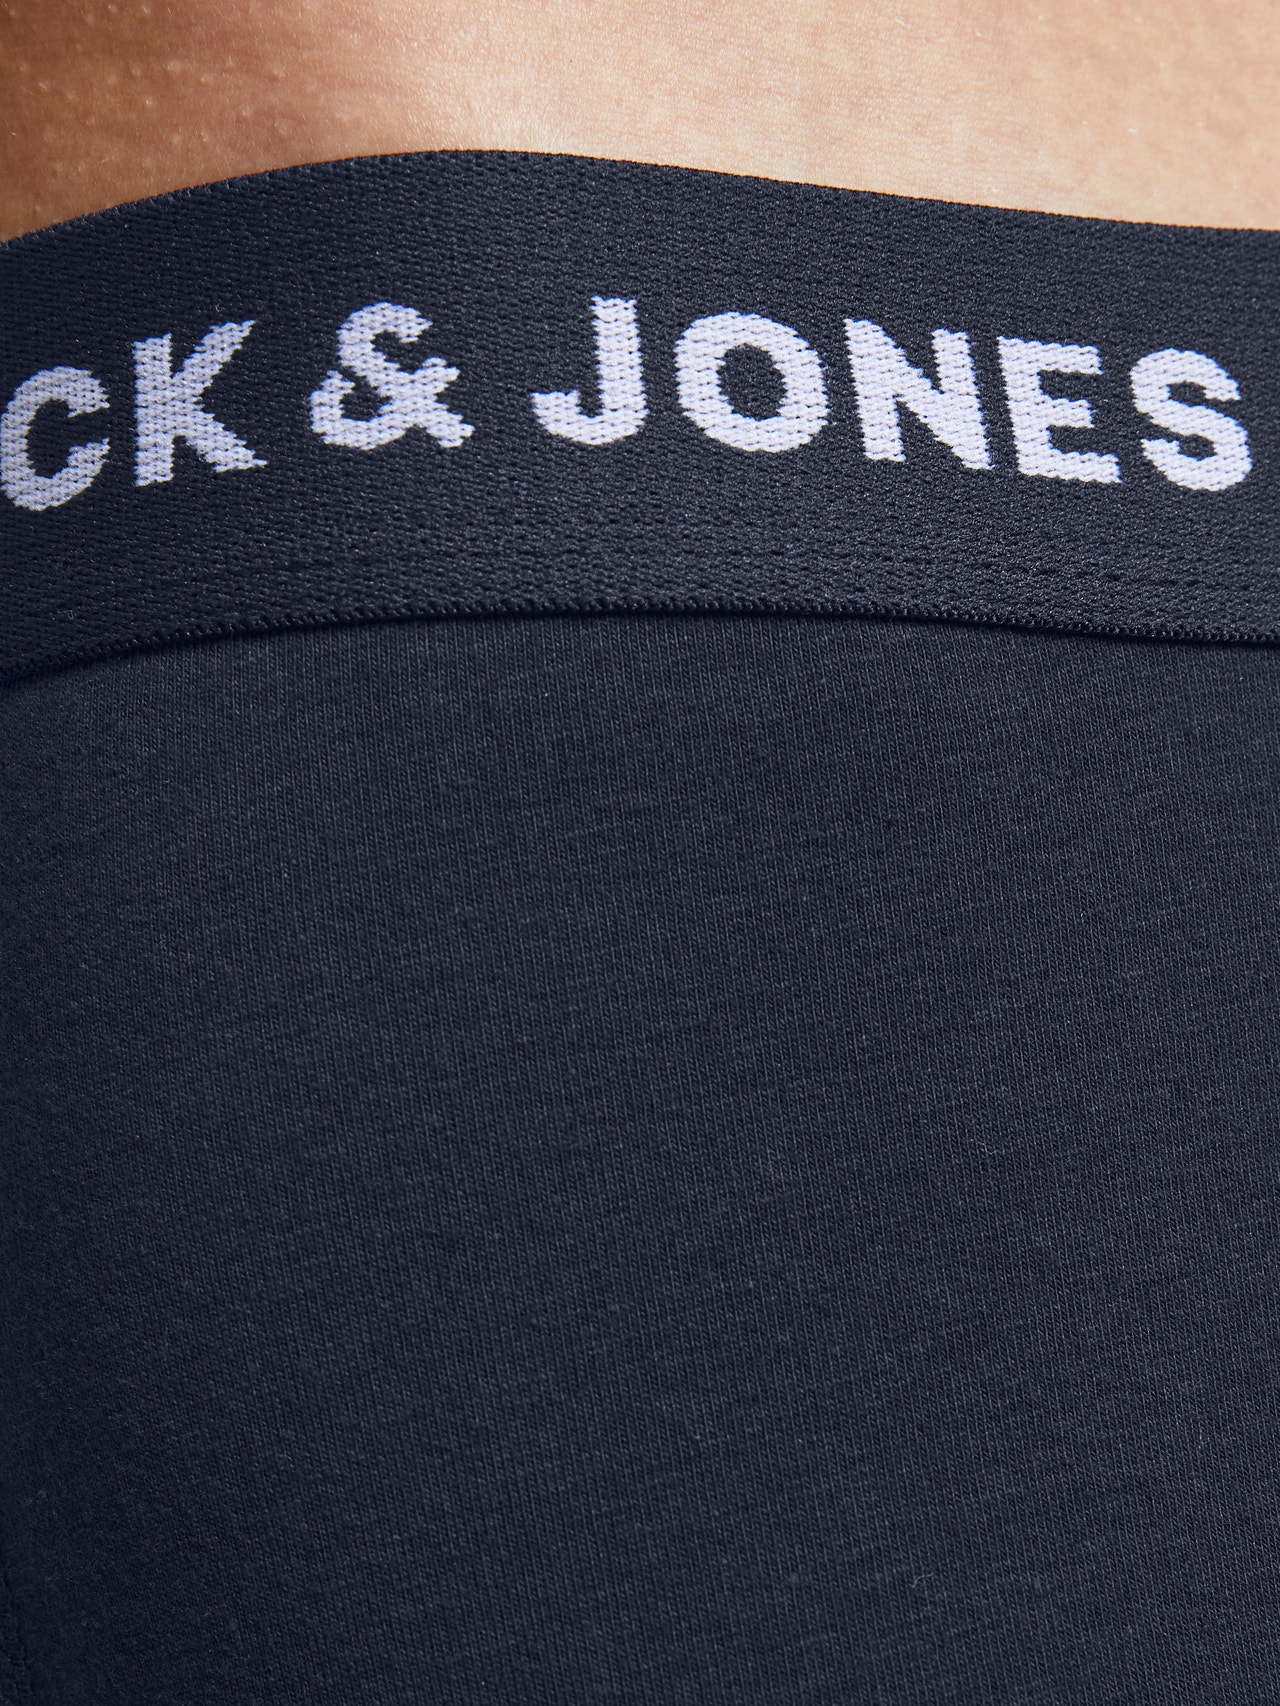 Jack & Jones 10-pack Kalsonger -Navy Blazer - 12189937